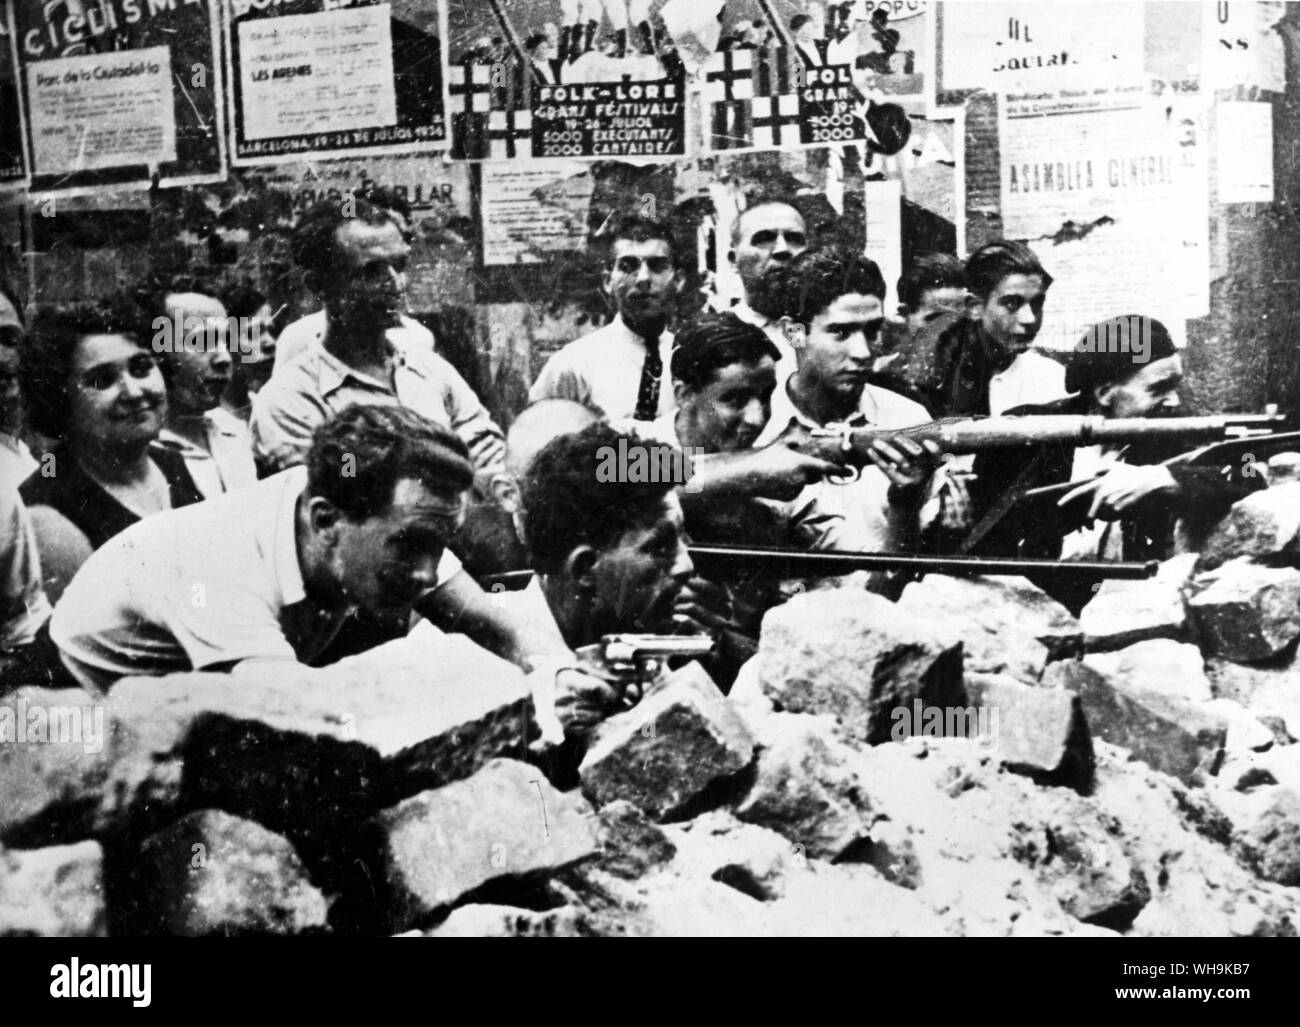 Juli 22 1936: Spanien/Barcelona: Faschistische Rebellion. Republikanische freiwillige verschiedentlich mit Gewehren und Pistolen bewaffnet, Manning ein Backstein Barrikade während einer Straßenschlacht in Barcelona. Die Republikaner haben die von der Regierung bewaffnet worden. Stockfoto